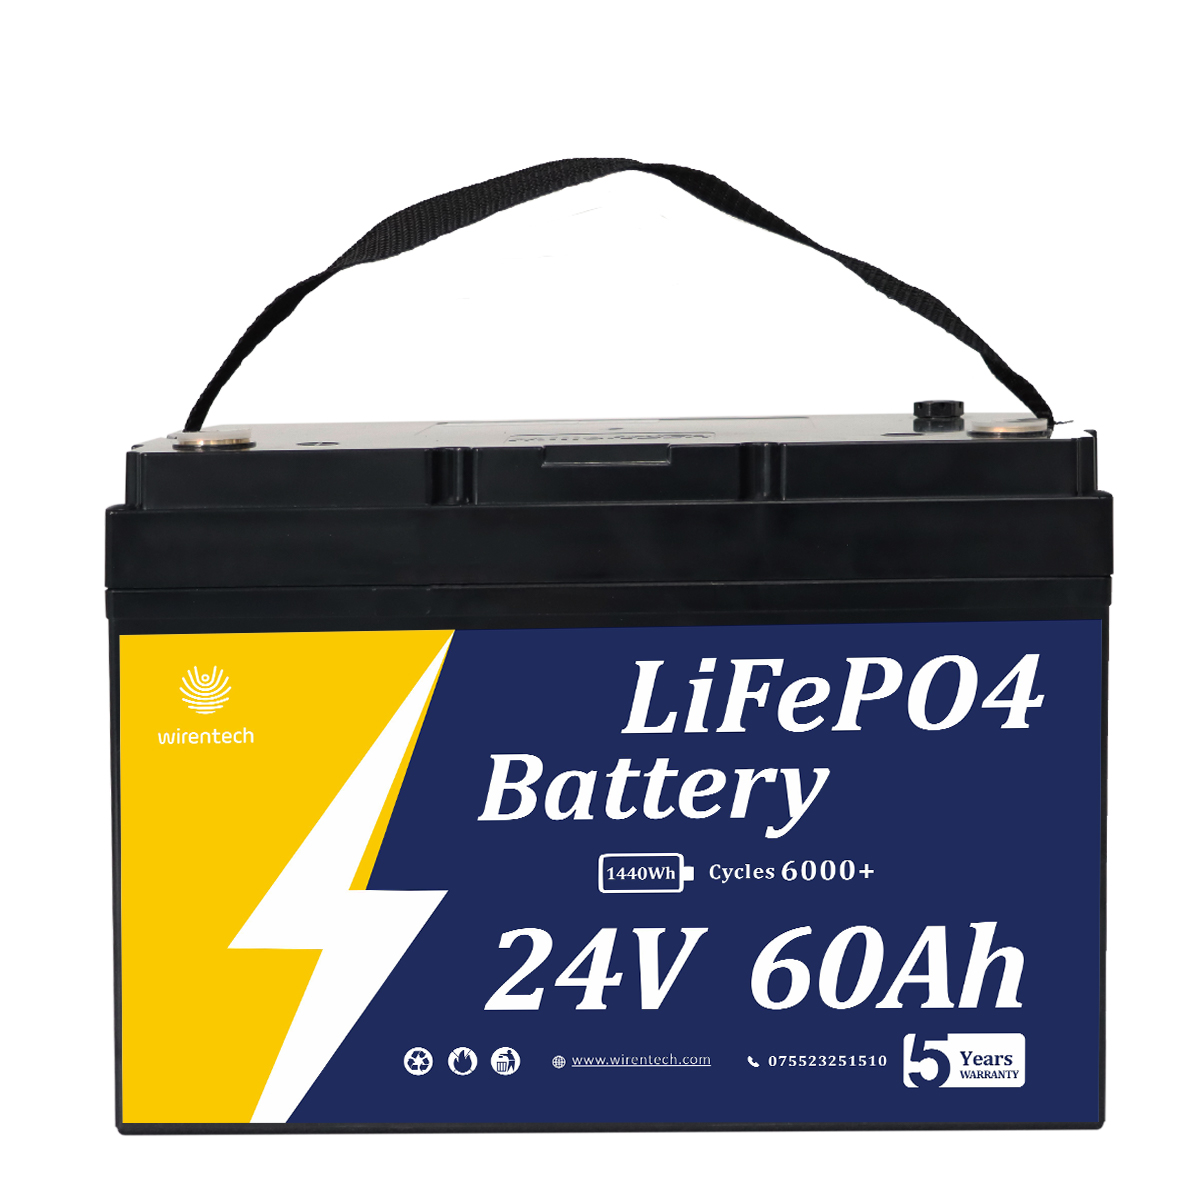 24V 60Ah Évent atmosphérique Respectueux de l'environnement Bluetooth plus intelligent Communications robustes Batterie de démarrage Batterie au lithium haute performance